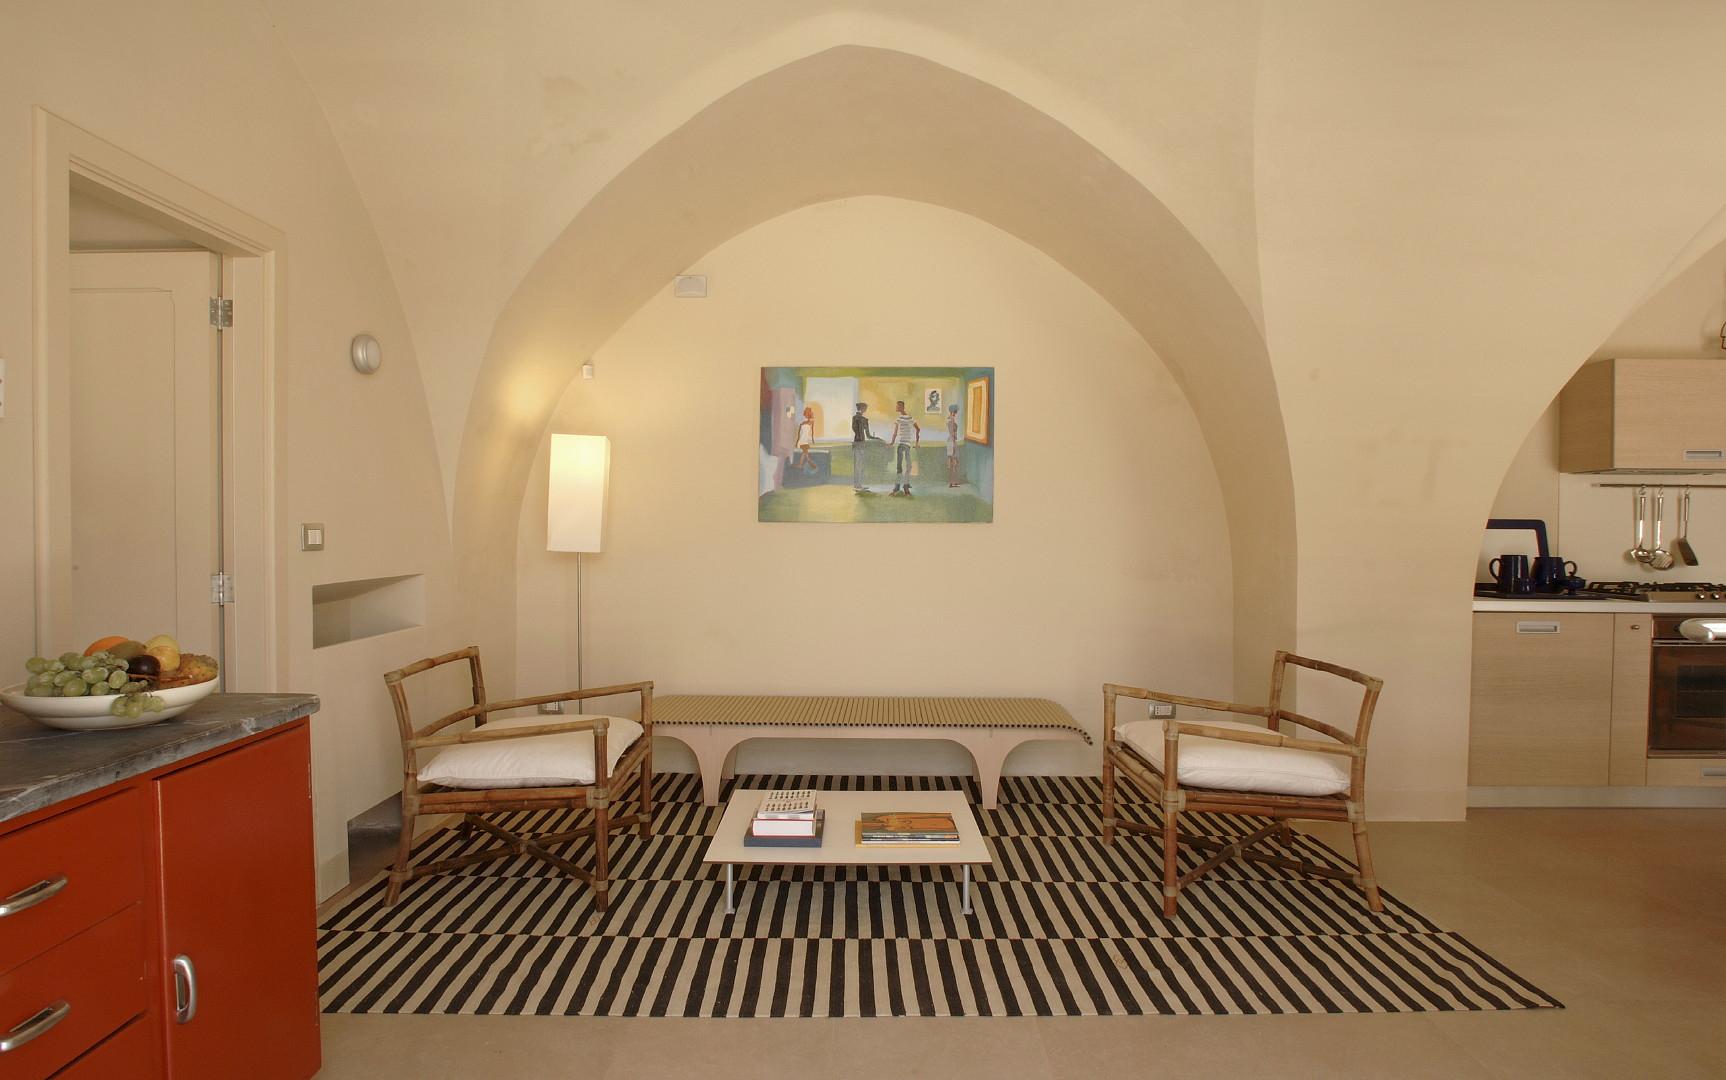 Guest house A - Suite quattro Vele - espace avec salon, salle à manger et coin cuisine